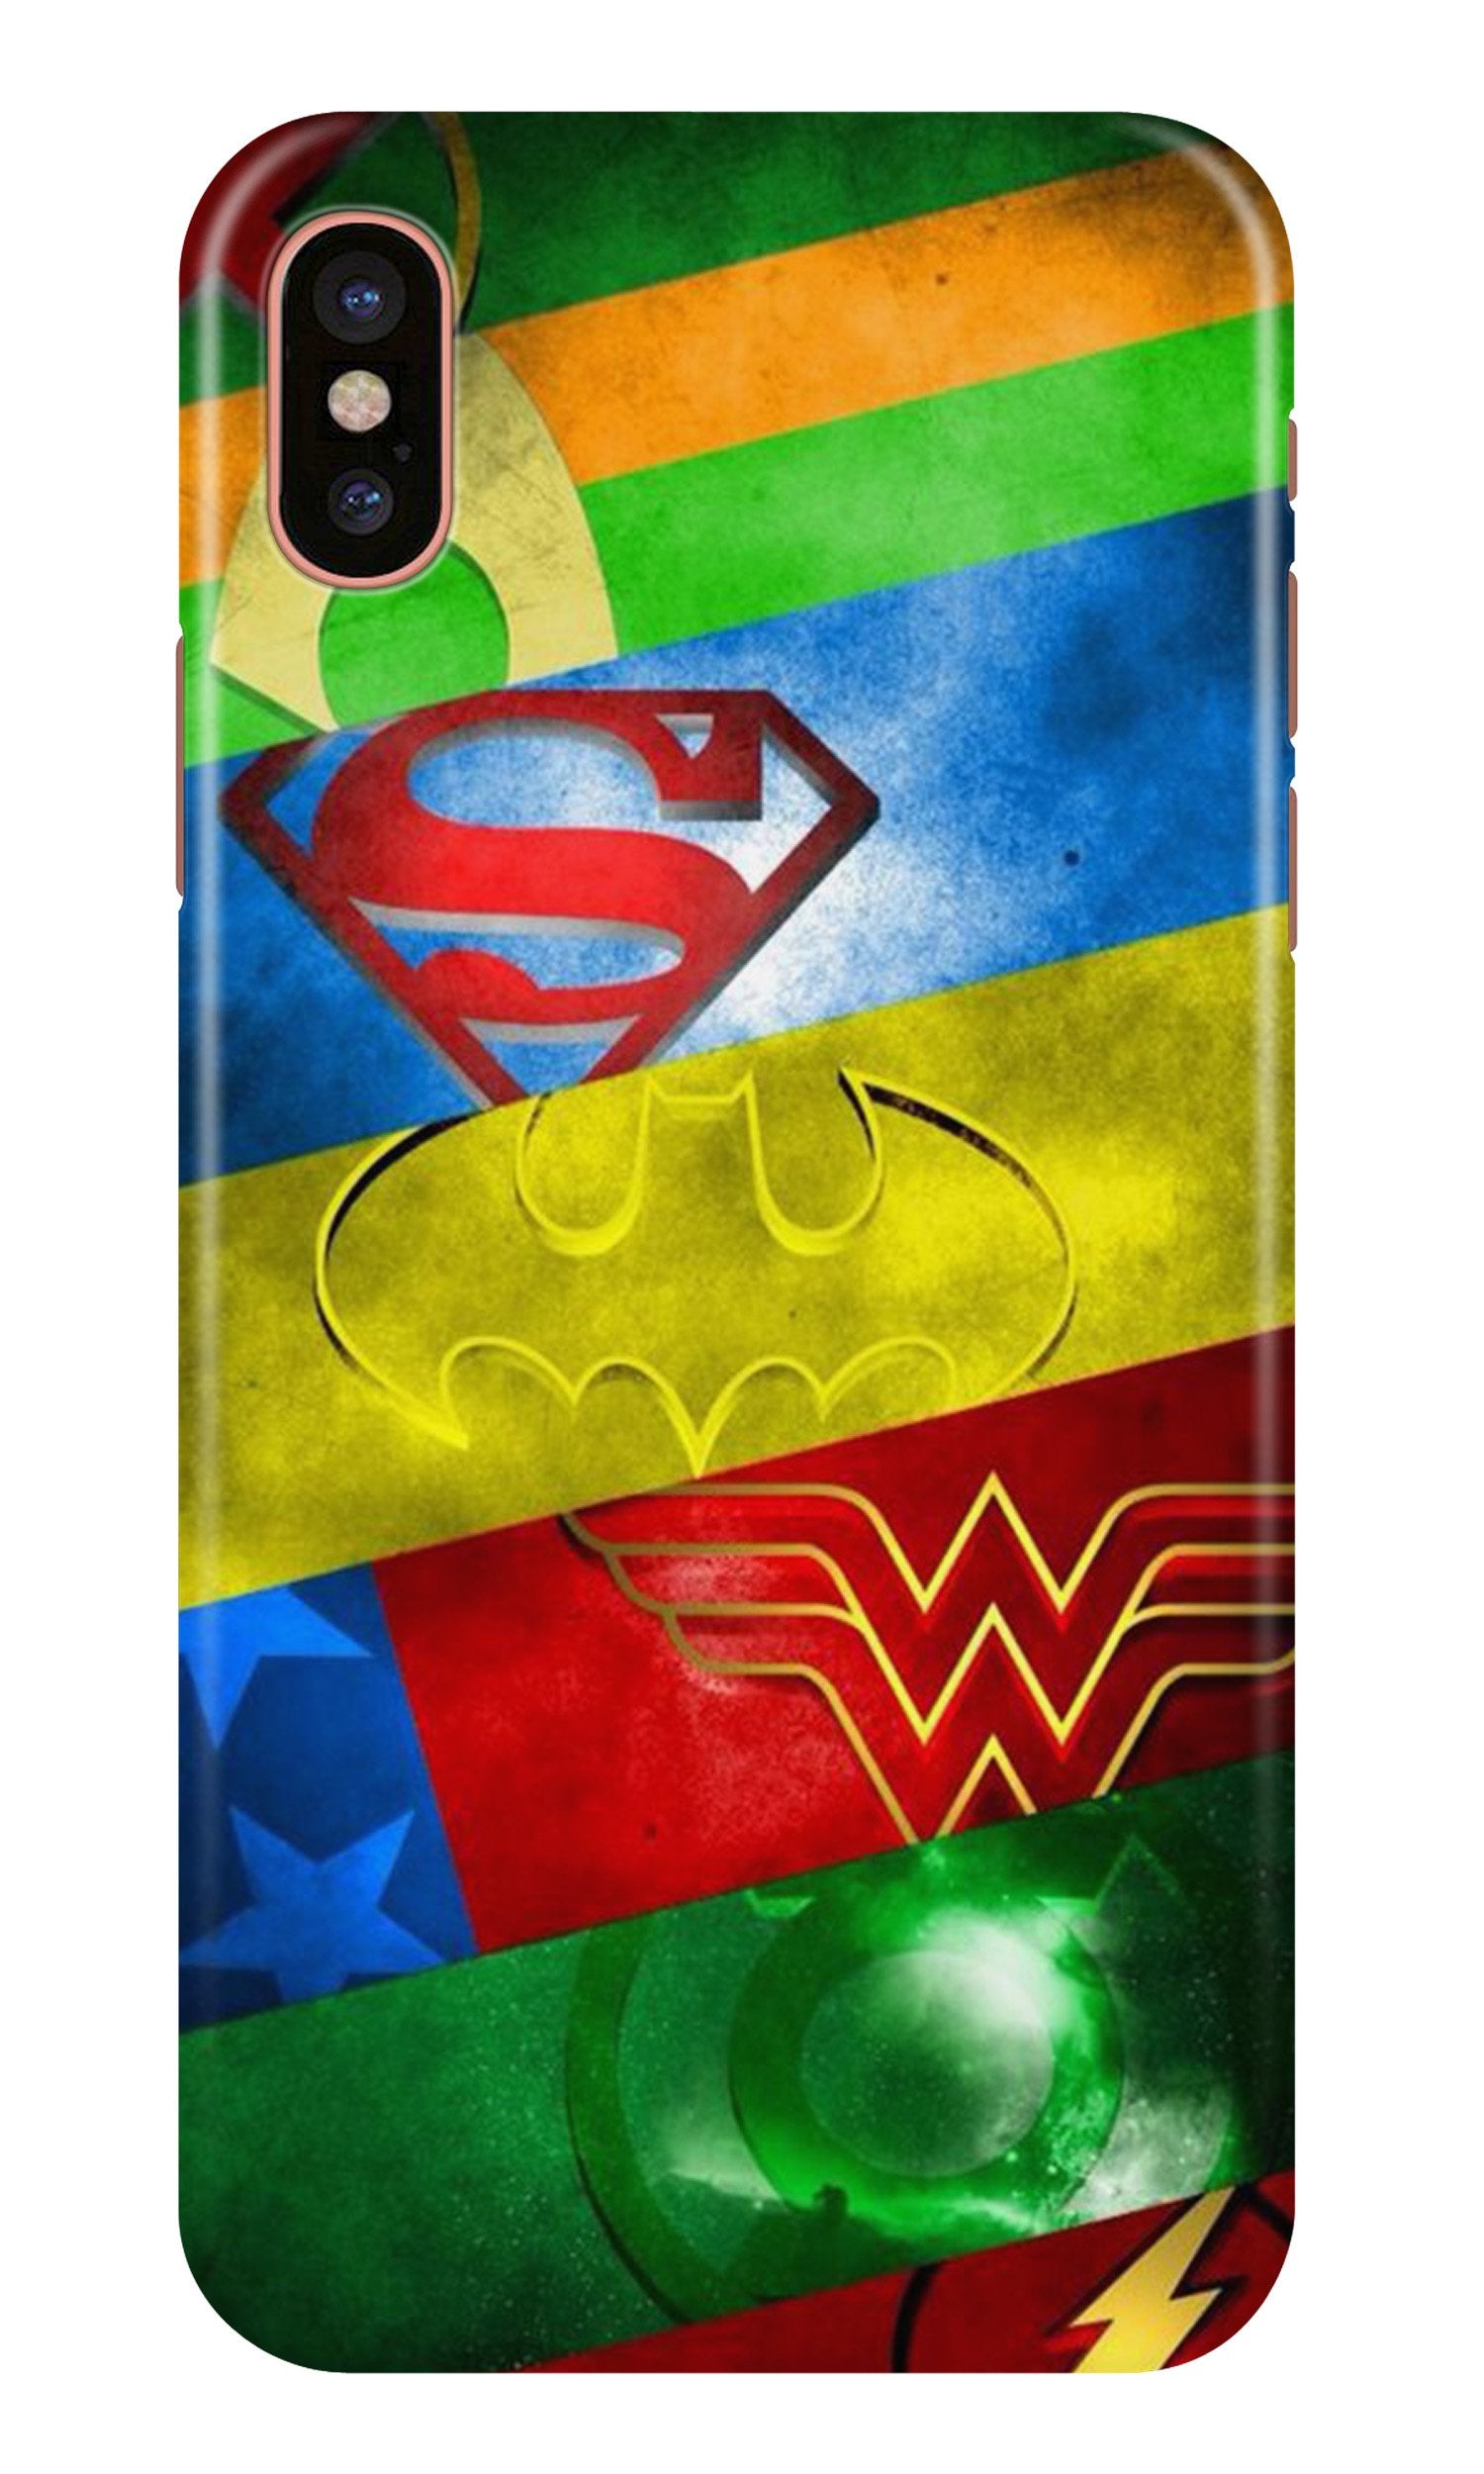 Superheros Logo Case for iPhone X (Design No. 251)